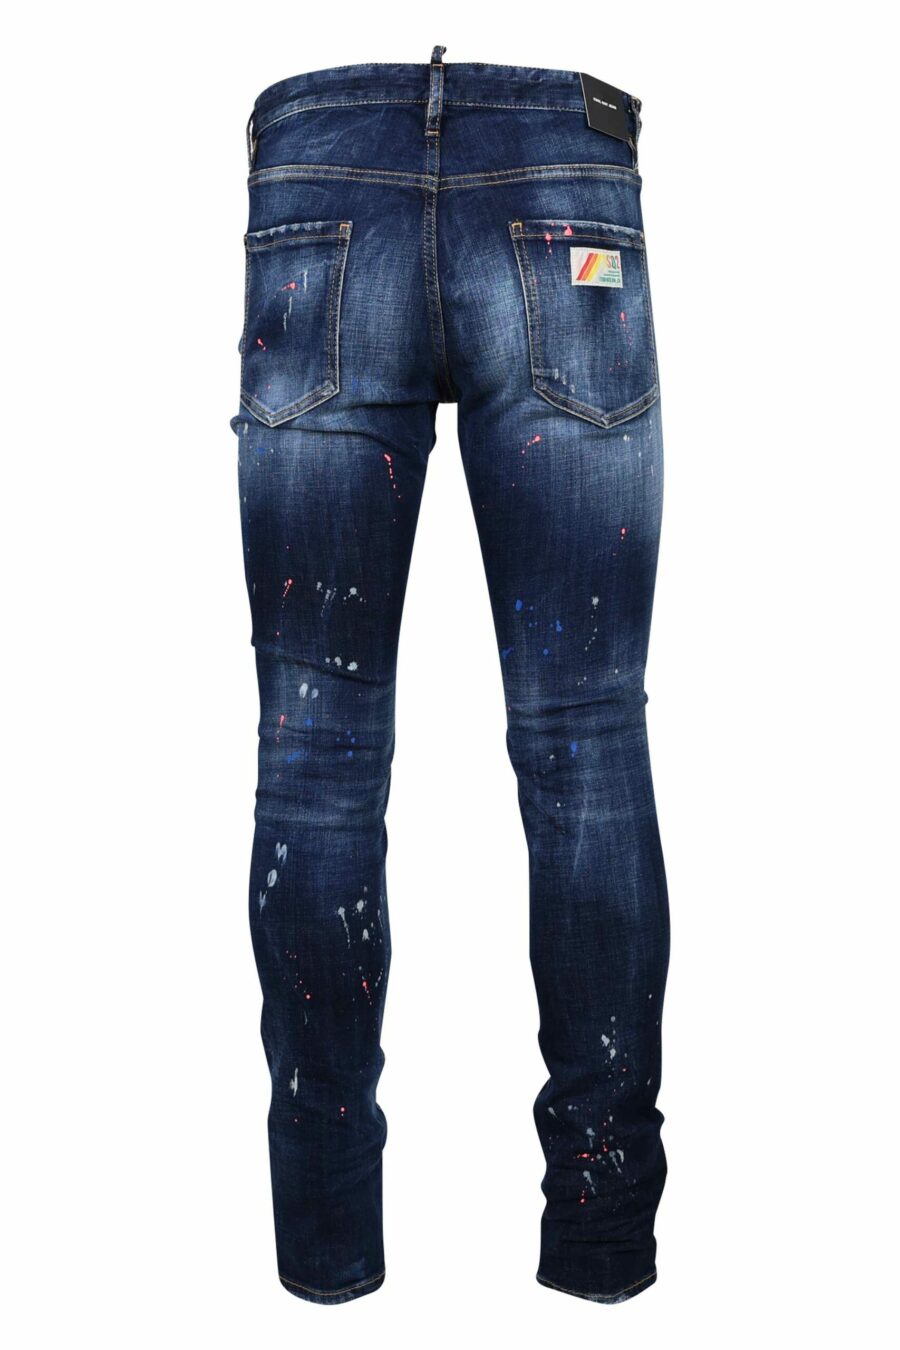 Pantalón vaquero azul "cool guy jean" desgastado con pintura naranja - 8054148308261 2 scaled